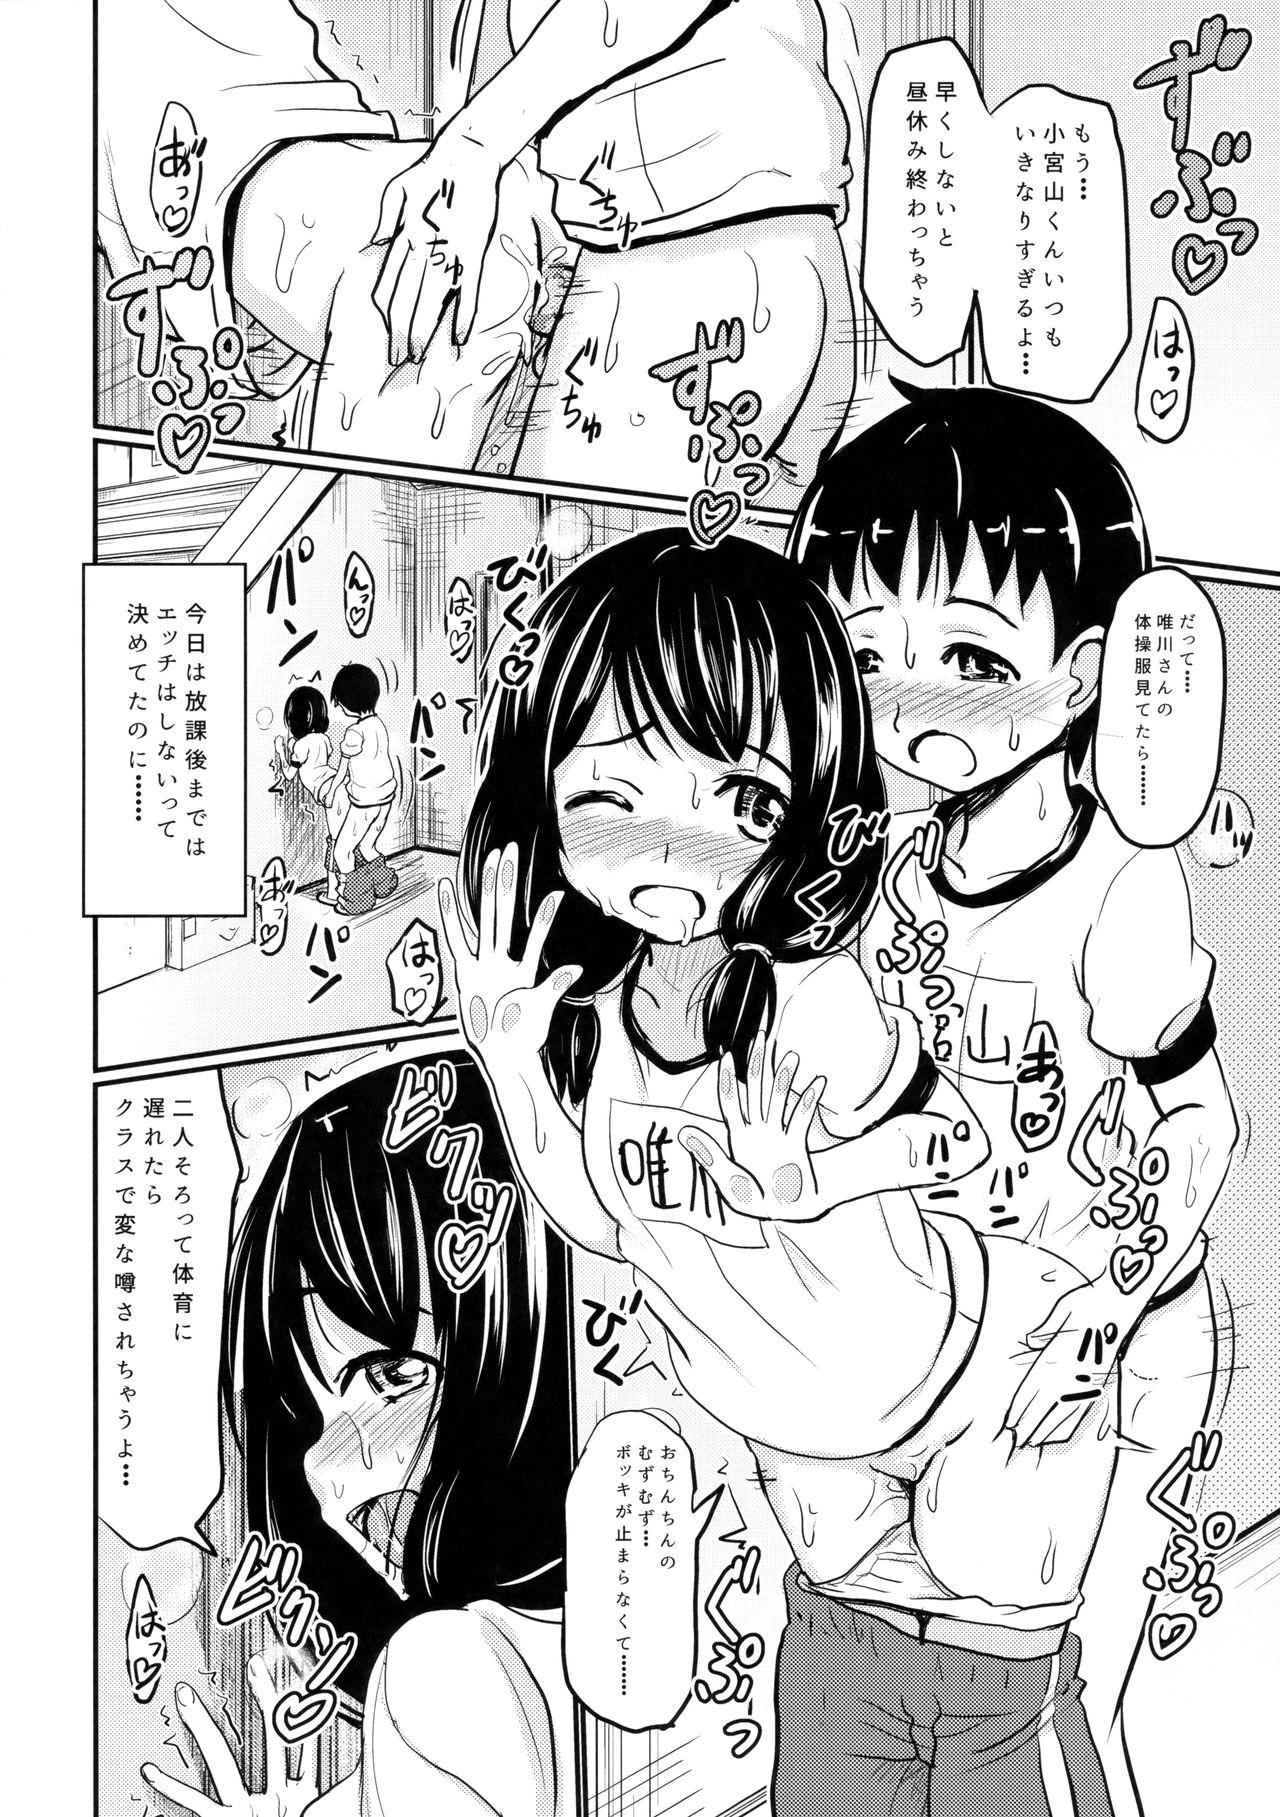 Blackdick Shougakusei Bitch wa Saikou daze!! Yuikawa Mayu no Dokidoki Ecchi wa Tomerarenai Hen T Girl - Page 7